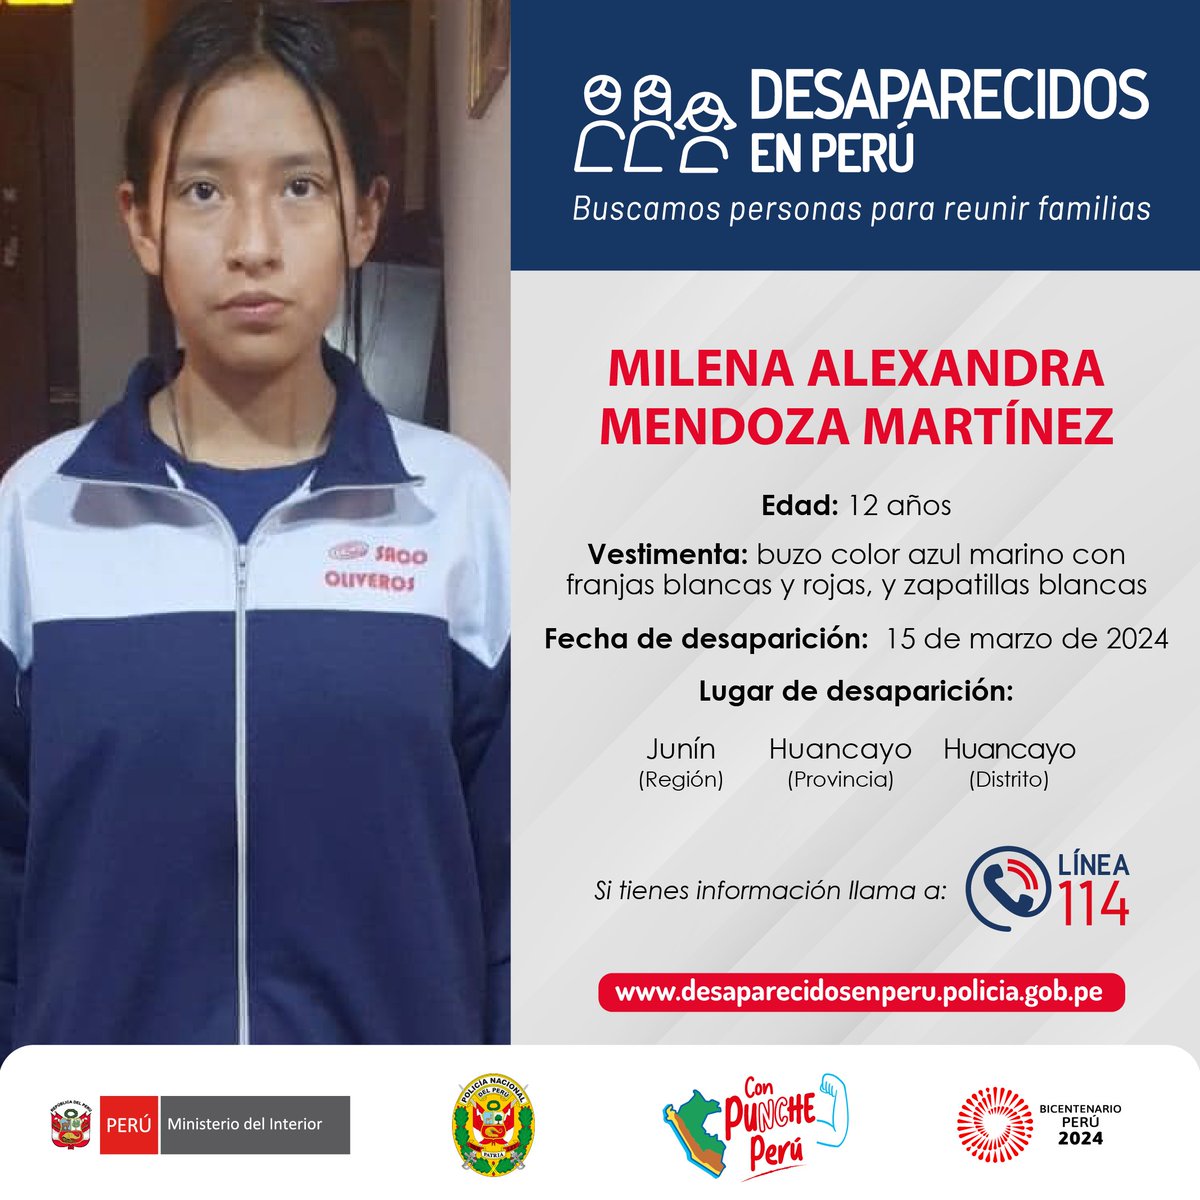 🔁 COMPARTE | Ha desaparecido Milena Mendoza, de 12 años, en #Huancayo. 📍 La adolescente fue vista por última vez el 15 de marzo camino a su colegio. 📞 Si la haz visto o conoces su paradero, llama a la Línea 114 de la @PoliciaPeru. #DesaparecidosEnPerú